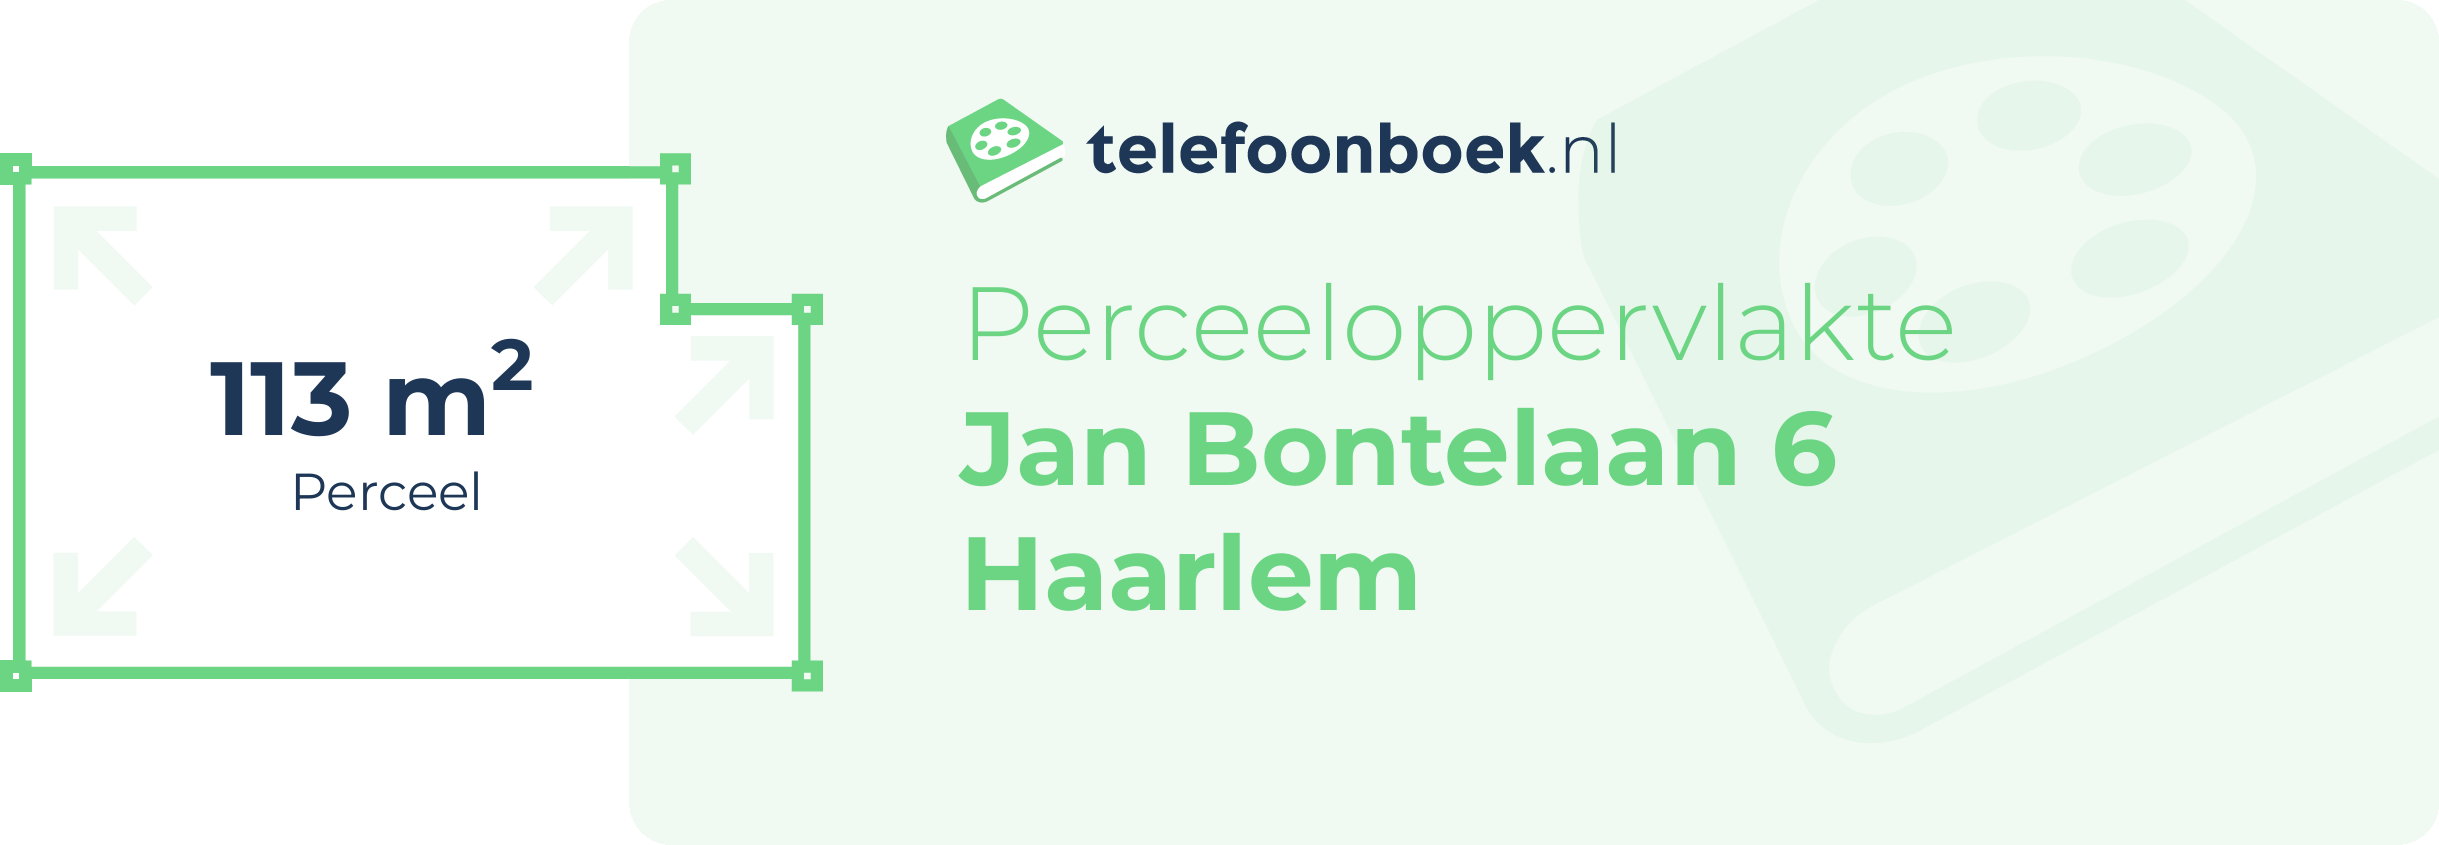 Perceeloppervlakte Jan Bontelaan 6 Haarlem